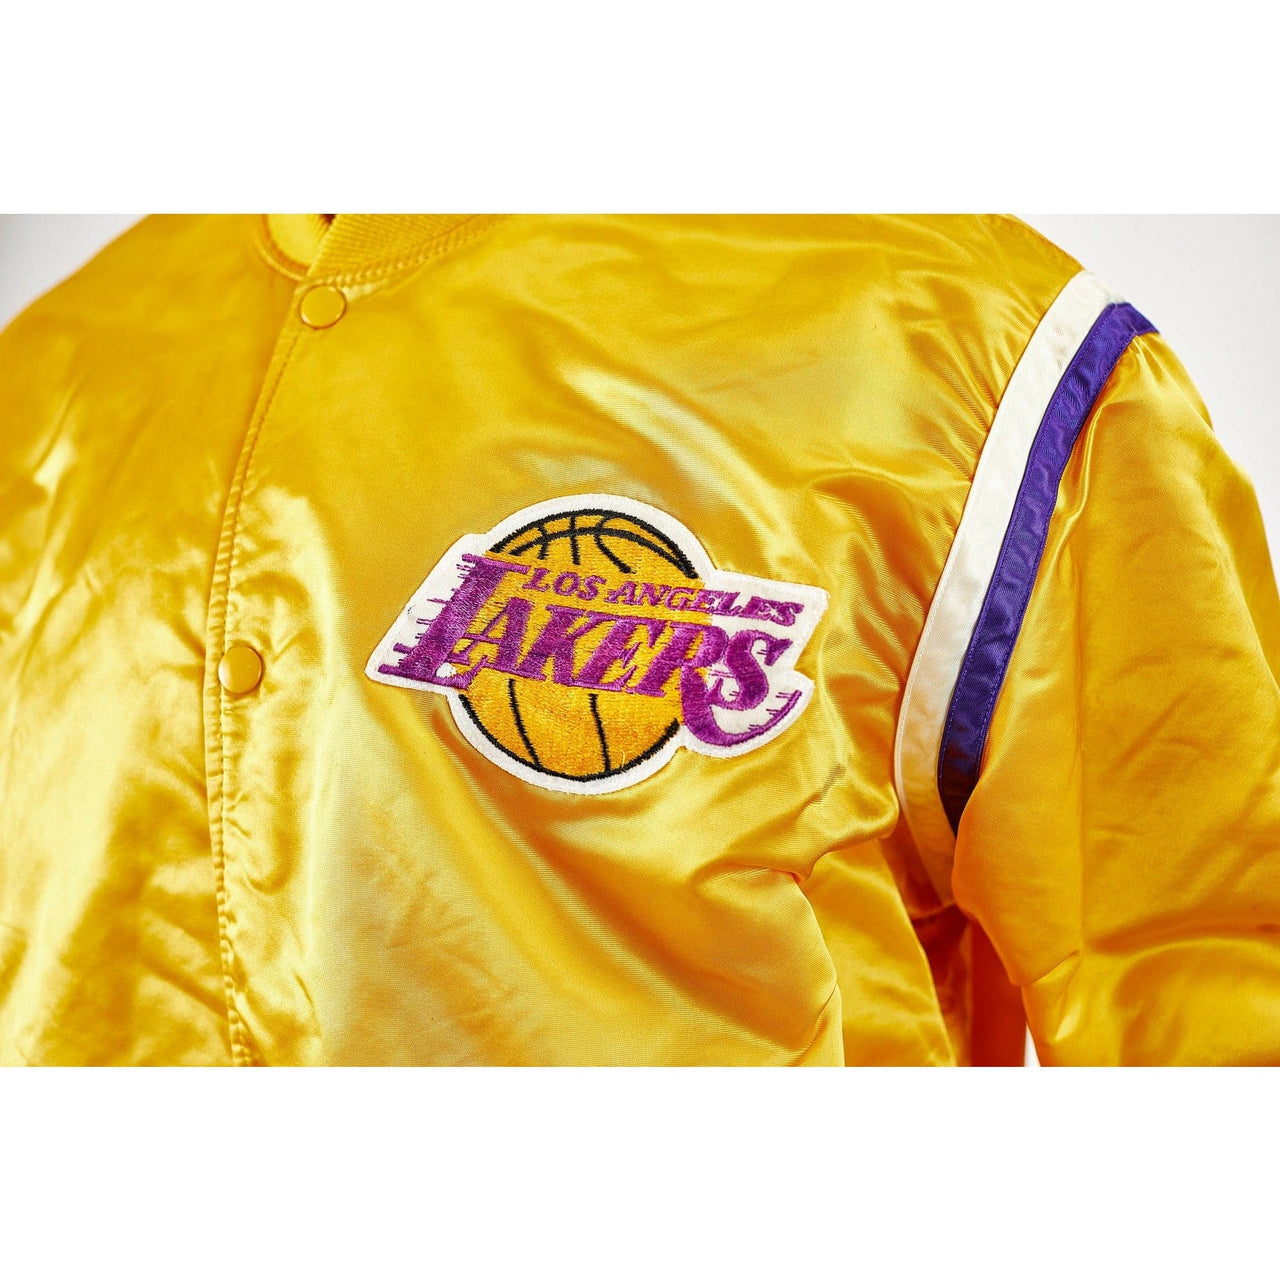 Varsity Club Jacket RESERVED - Vintage Los Angeles Lakers Starter Jacket